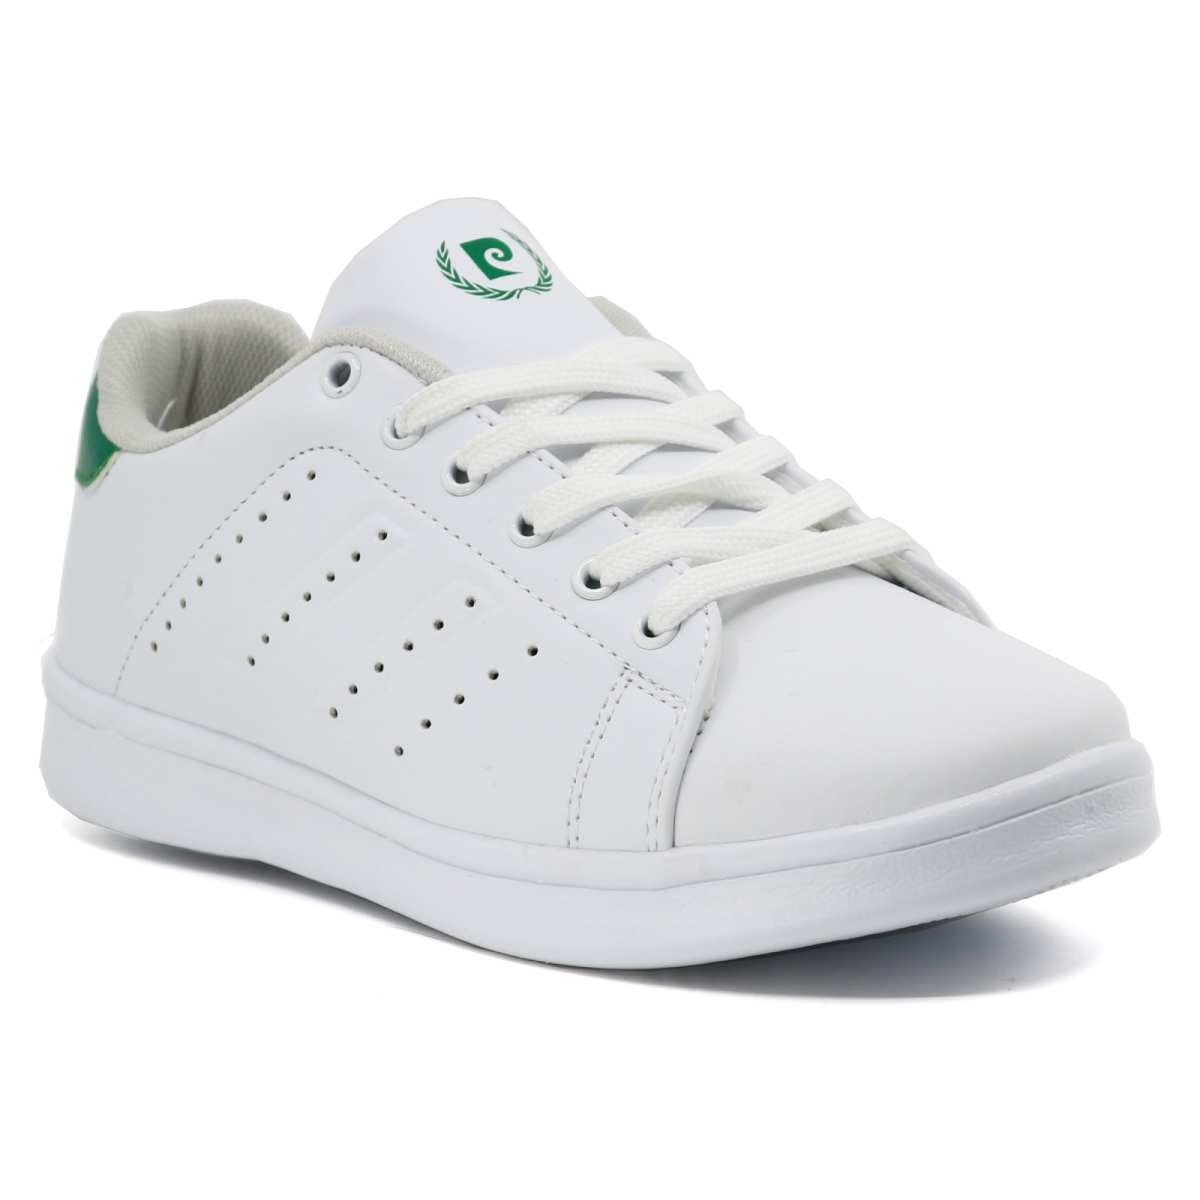 Flo 10152 Günlük Sneakers Erkek Spor Ayakkabı Beyaz Yeşİl. 1